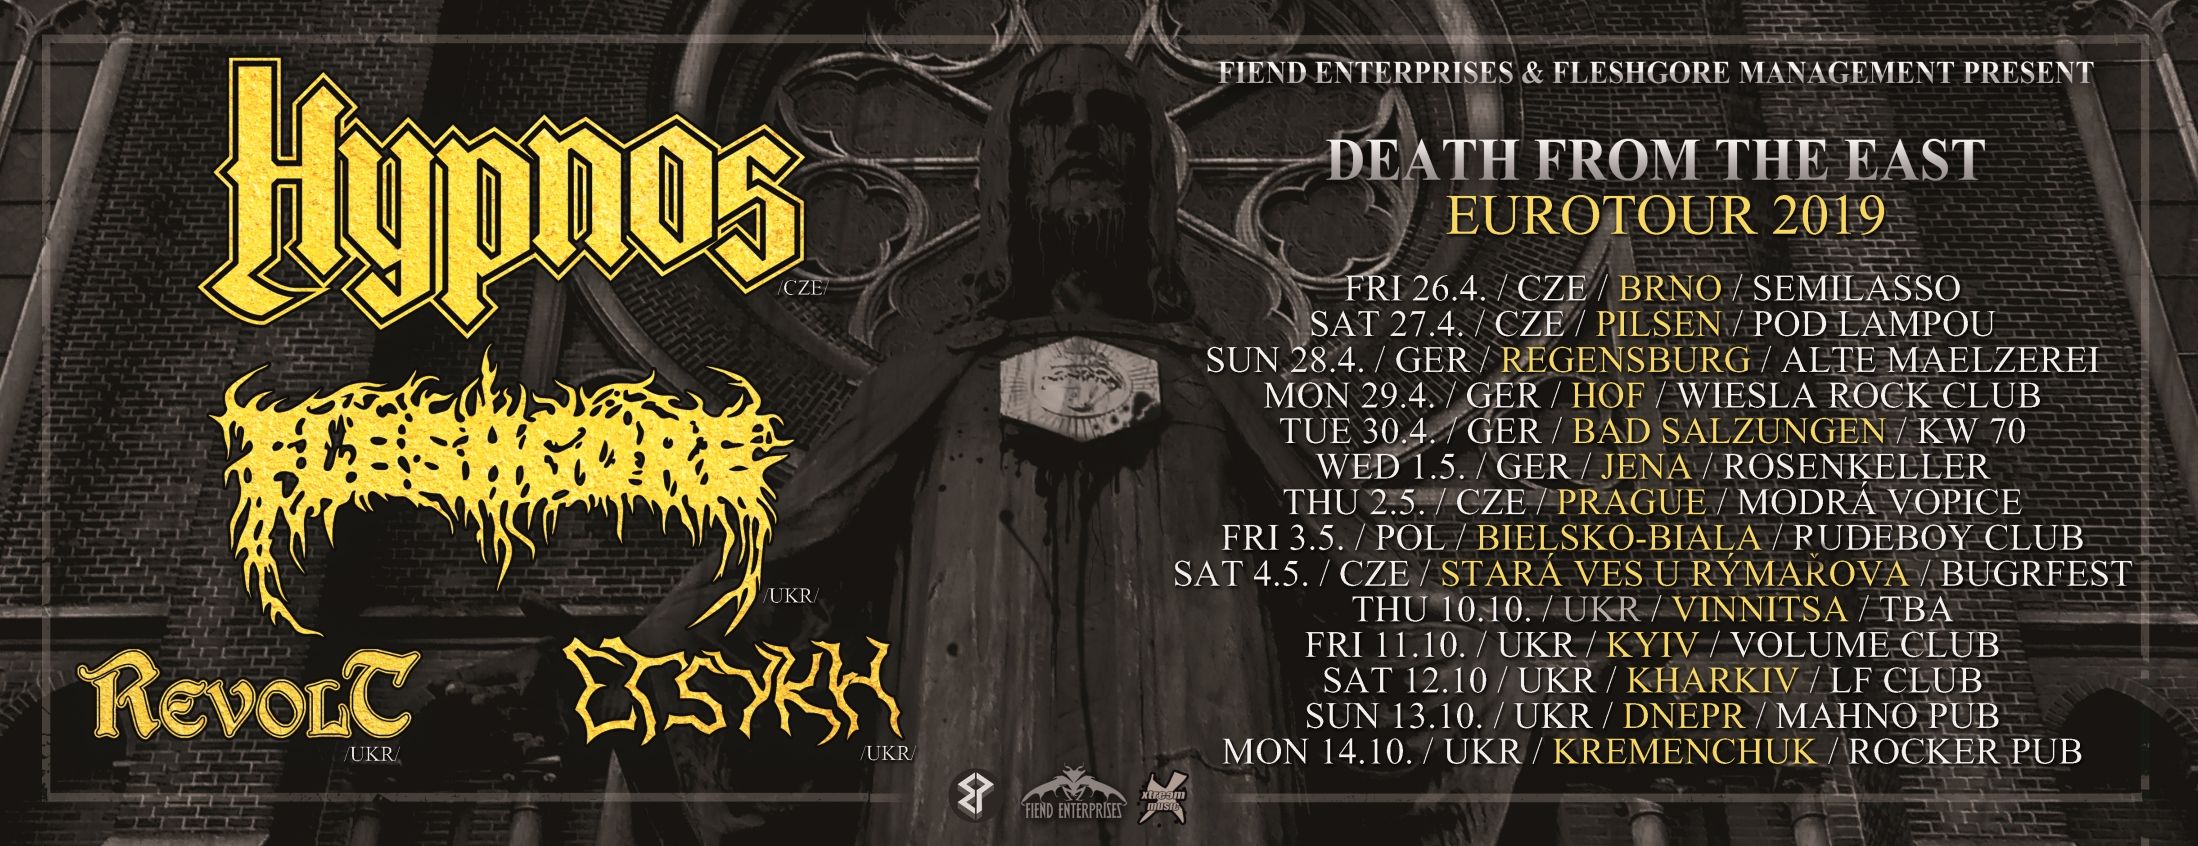 Tourplakat von Hypnos auf Death from the East tour 2019